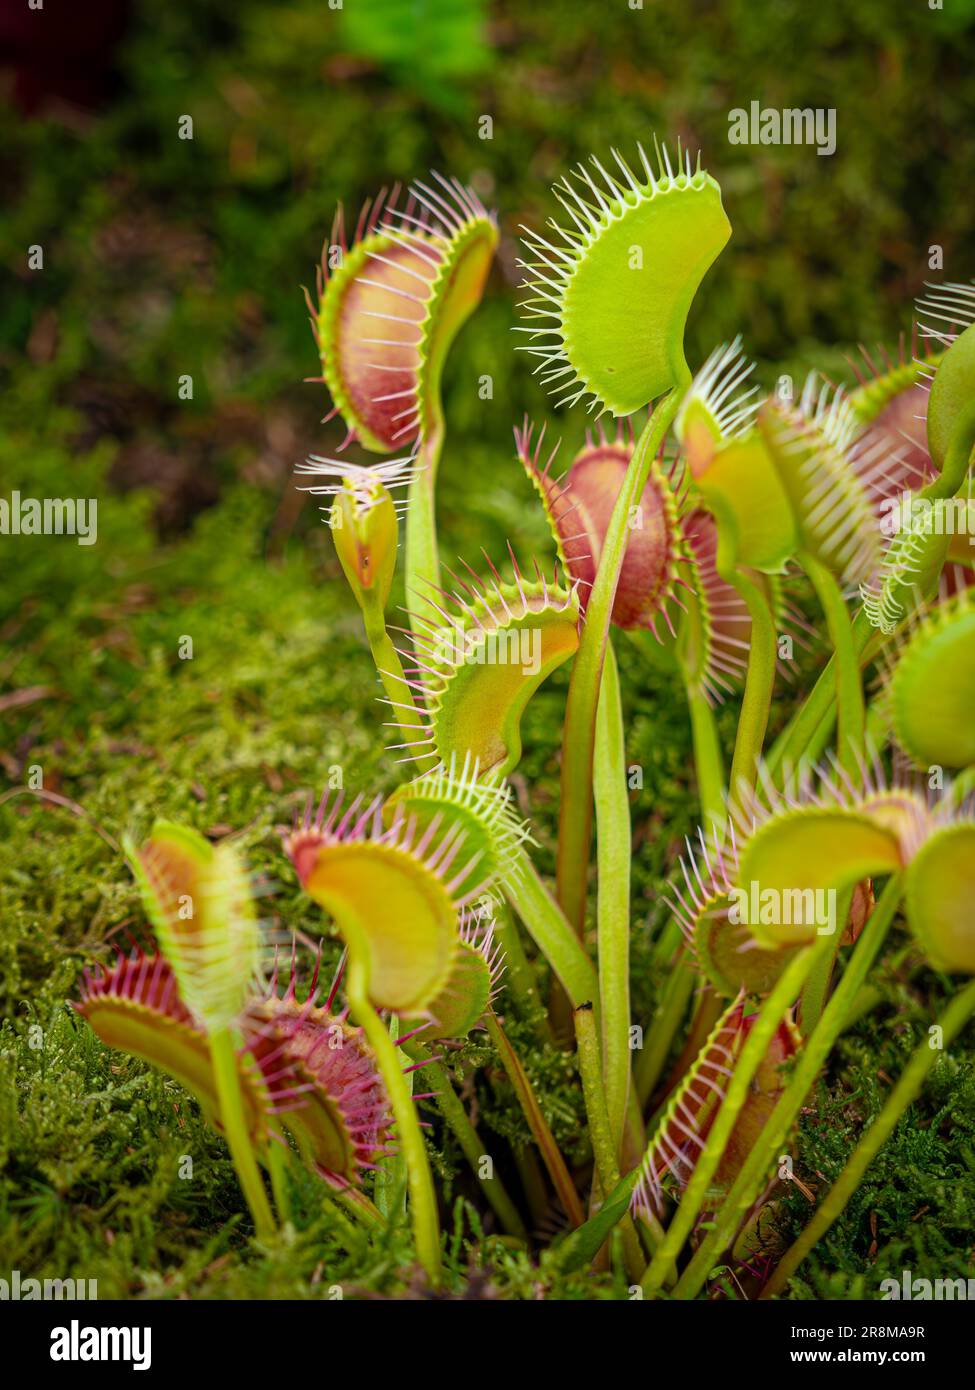 Gros plan du piège à mouches de Vénus Dionaea muscipula. Plante carnivore. Banque D'Images